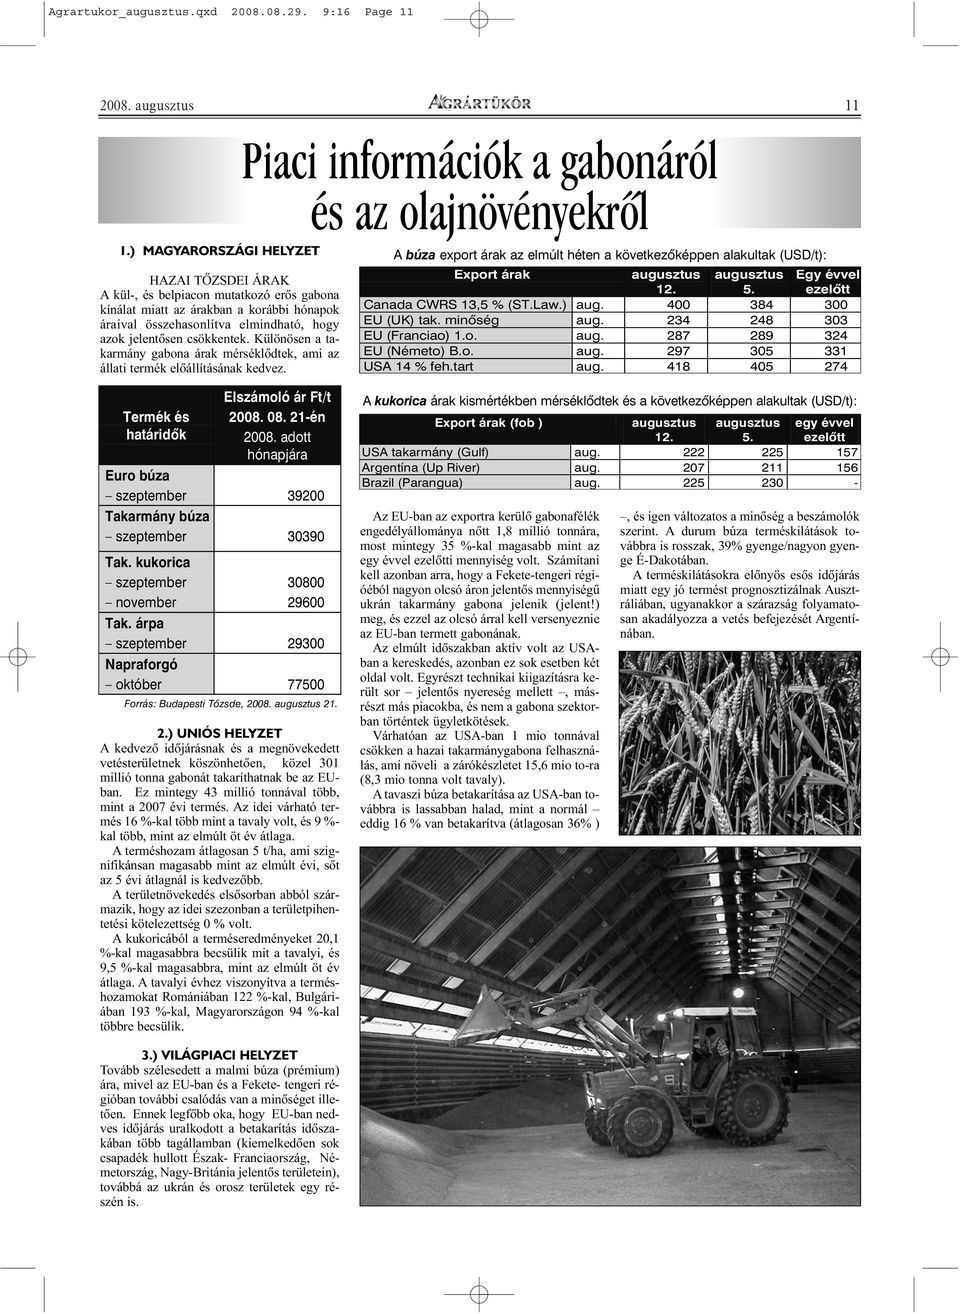 Különösen a takarmány gabona árak mérséklõdtek, ami az állati termék elõállításának kedvez.